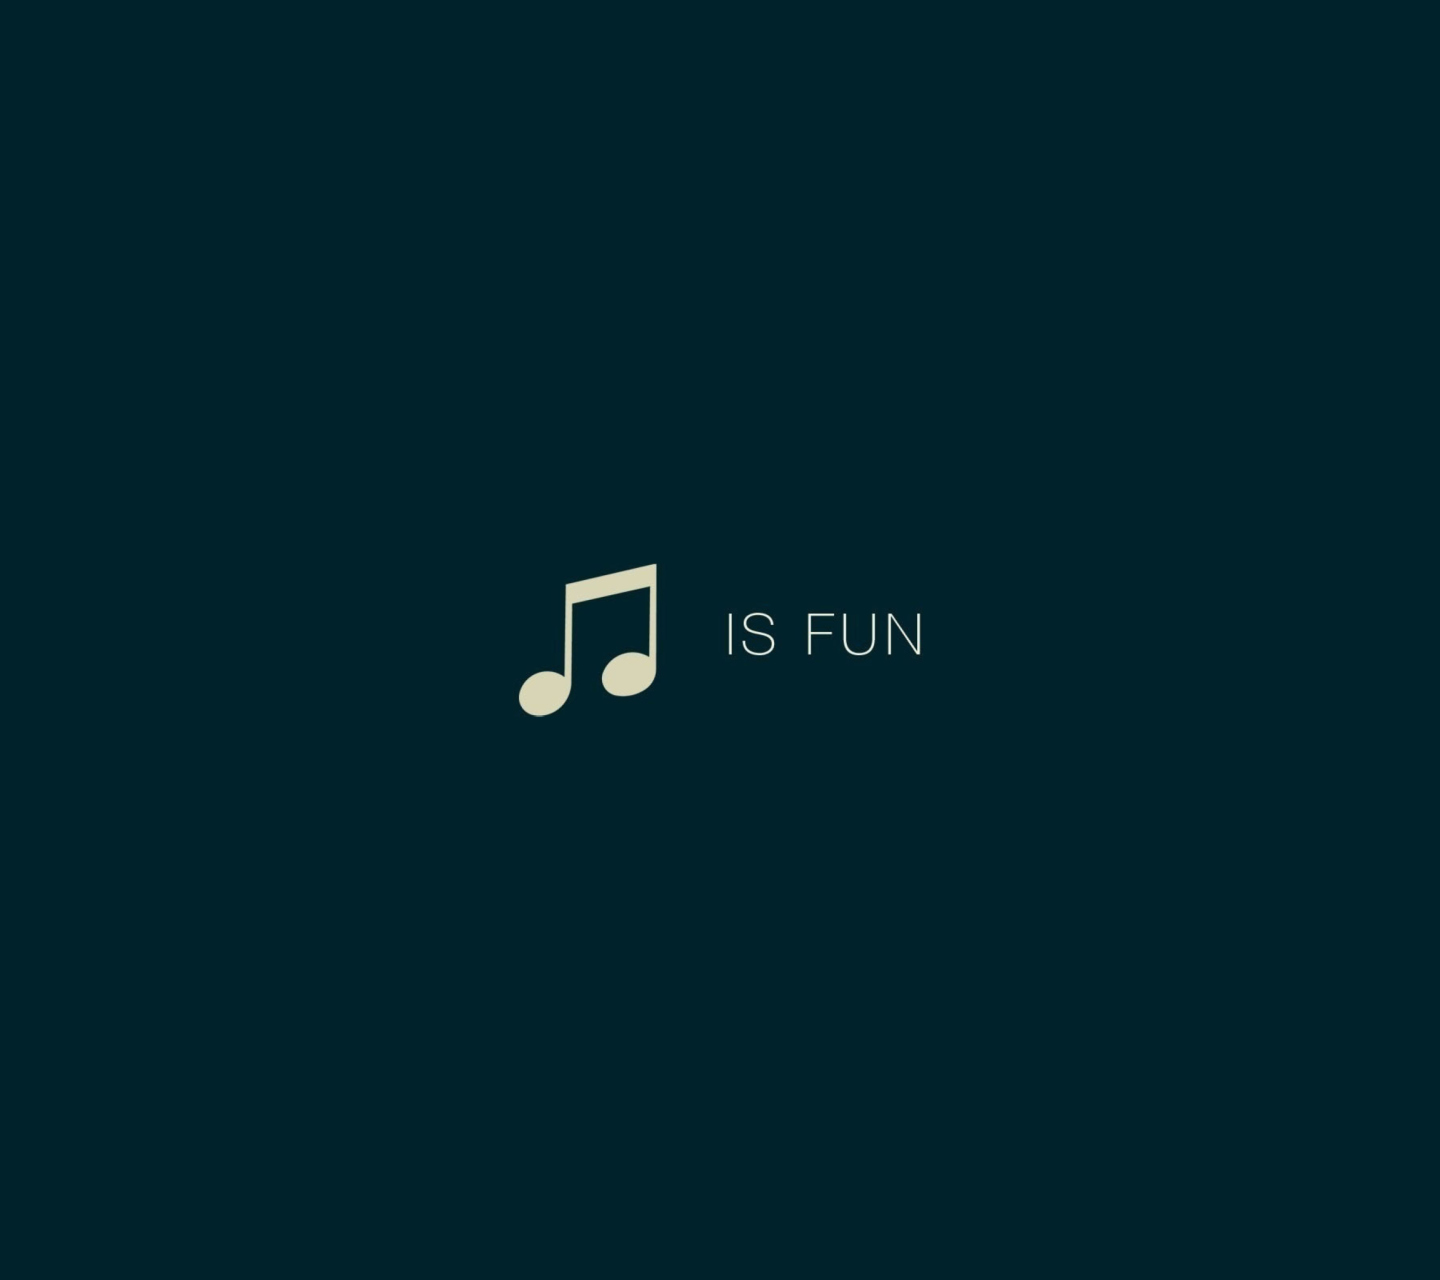 Das Music Is Fun Wallpaper 1440x1280